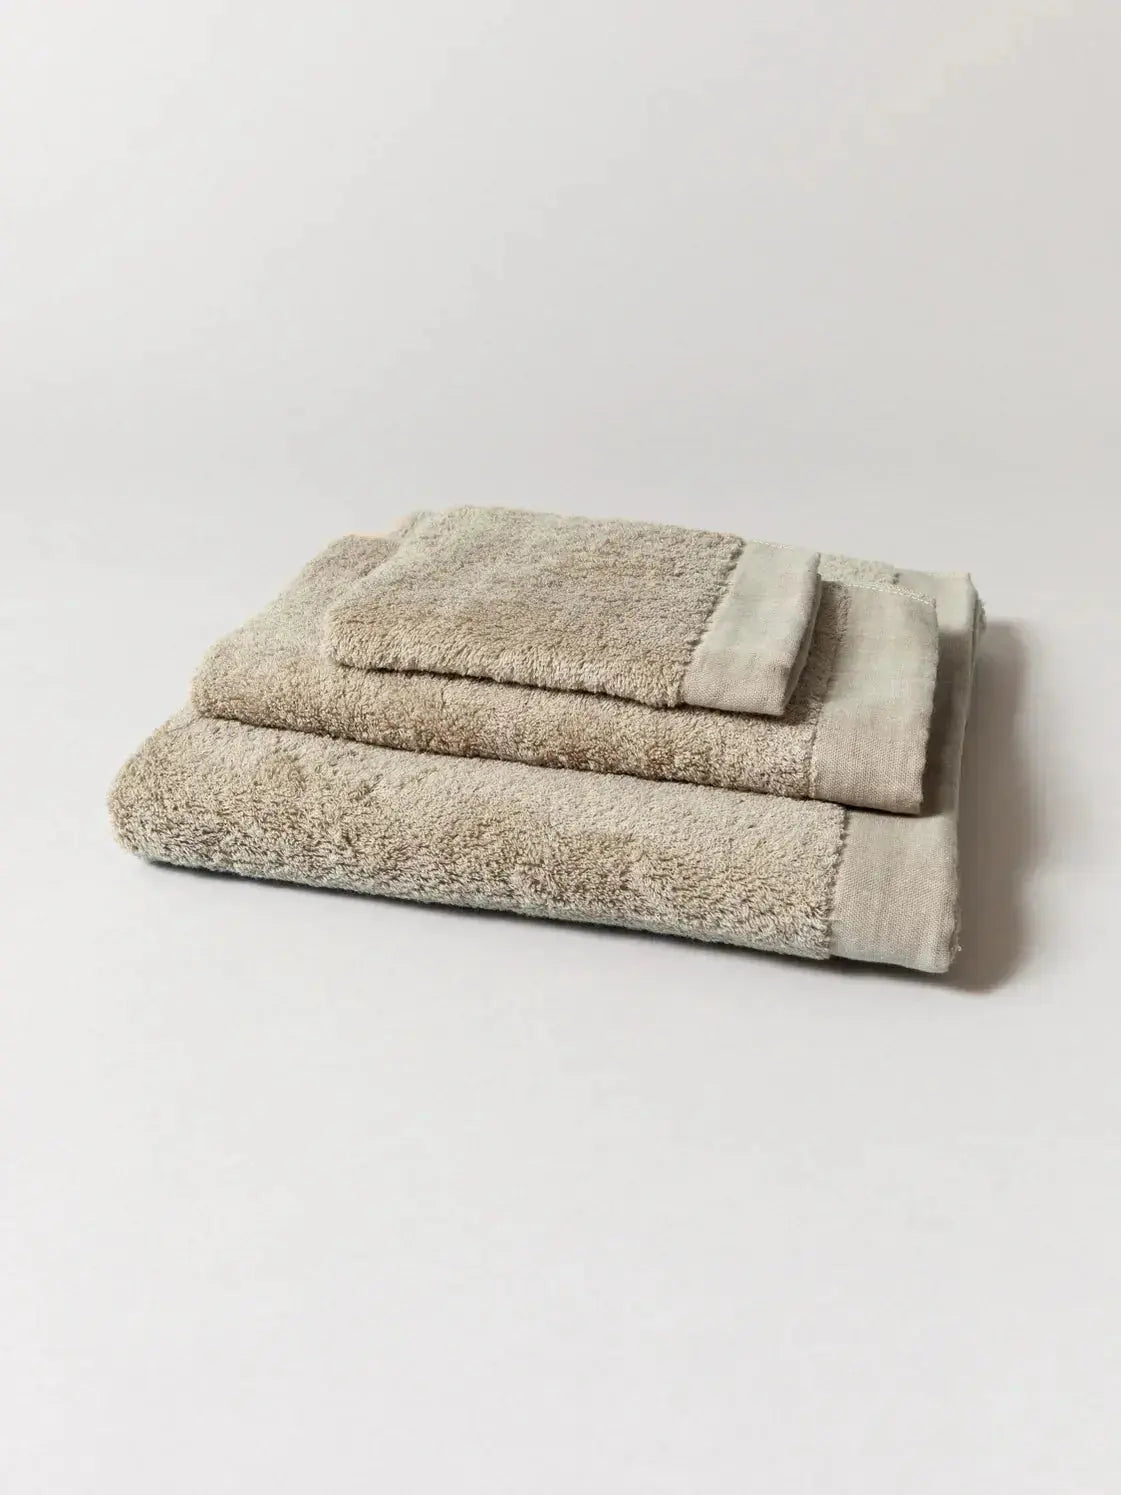 Kontex Primavera Towel Range Ottoloom